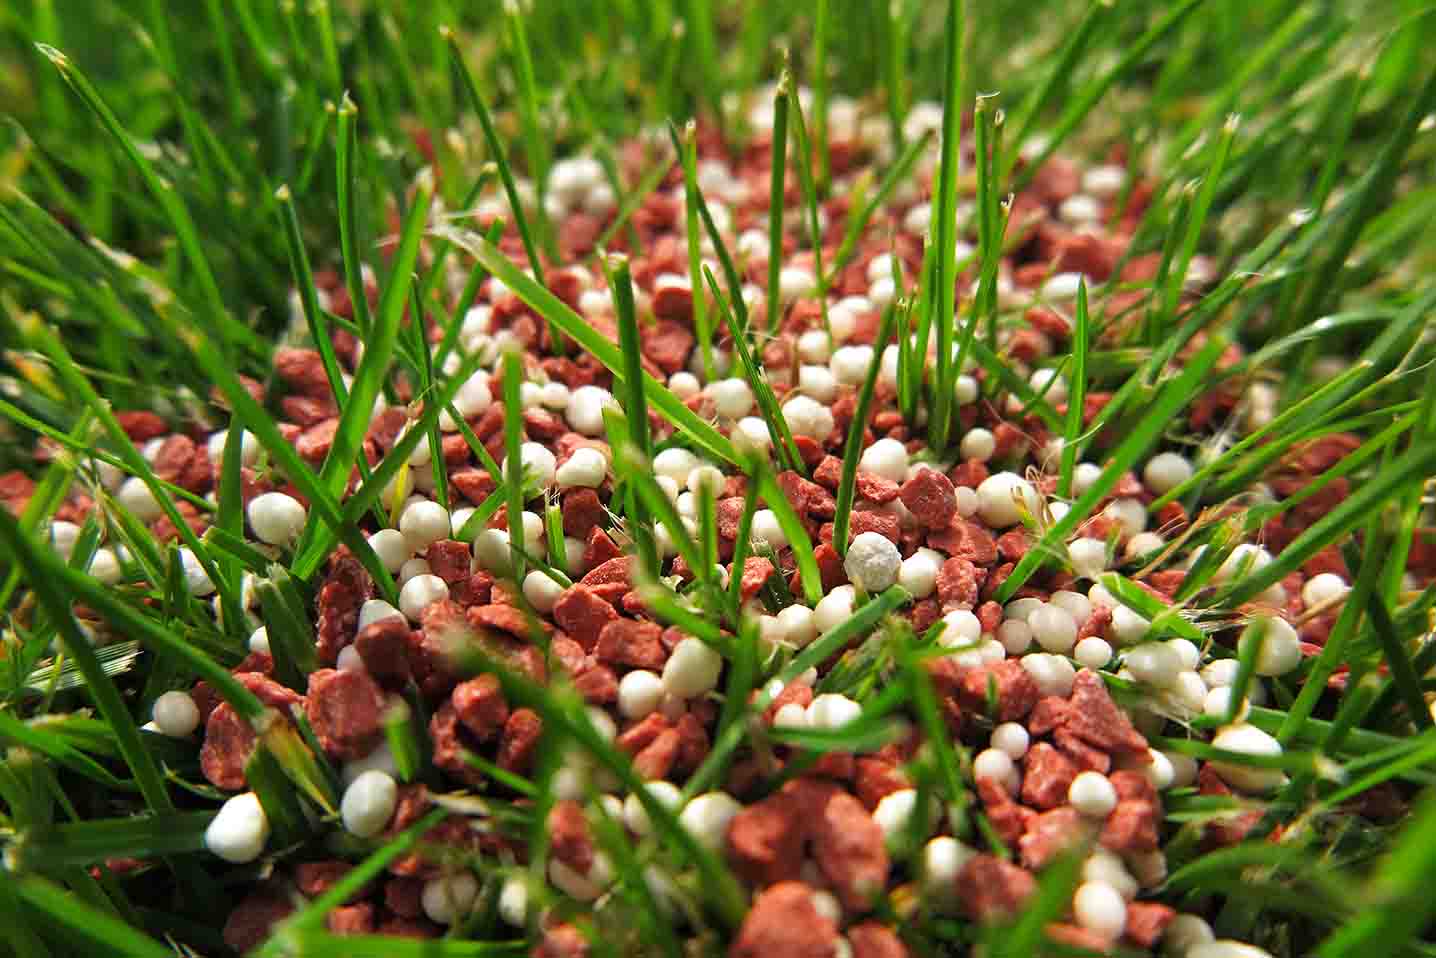 granular fertilizer in lawn